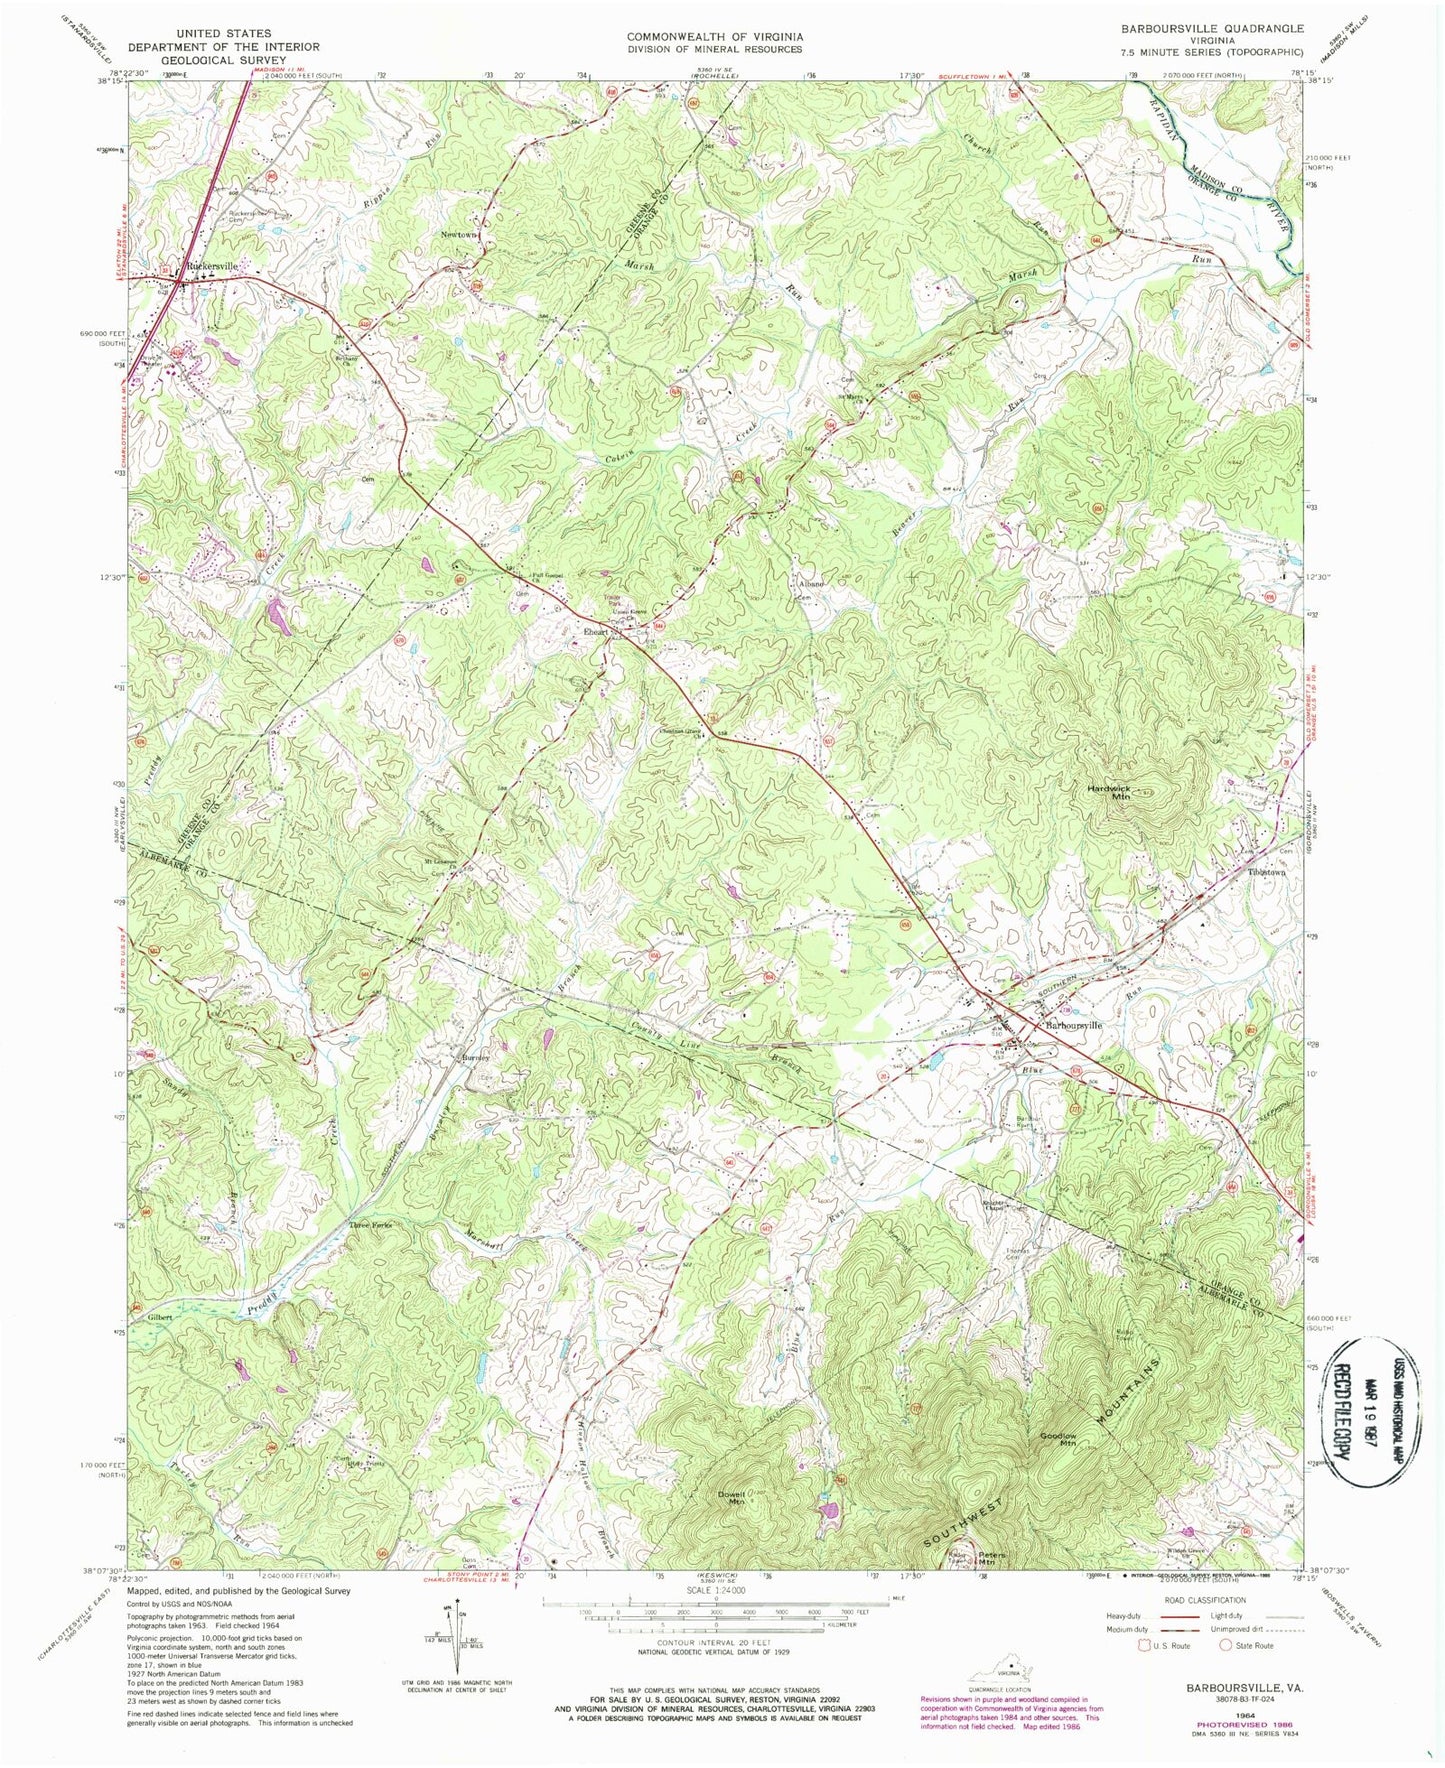 Classic USGS Barboursville Virginia 7.5'x7.5' Topo Map Image